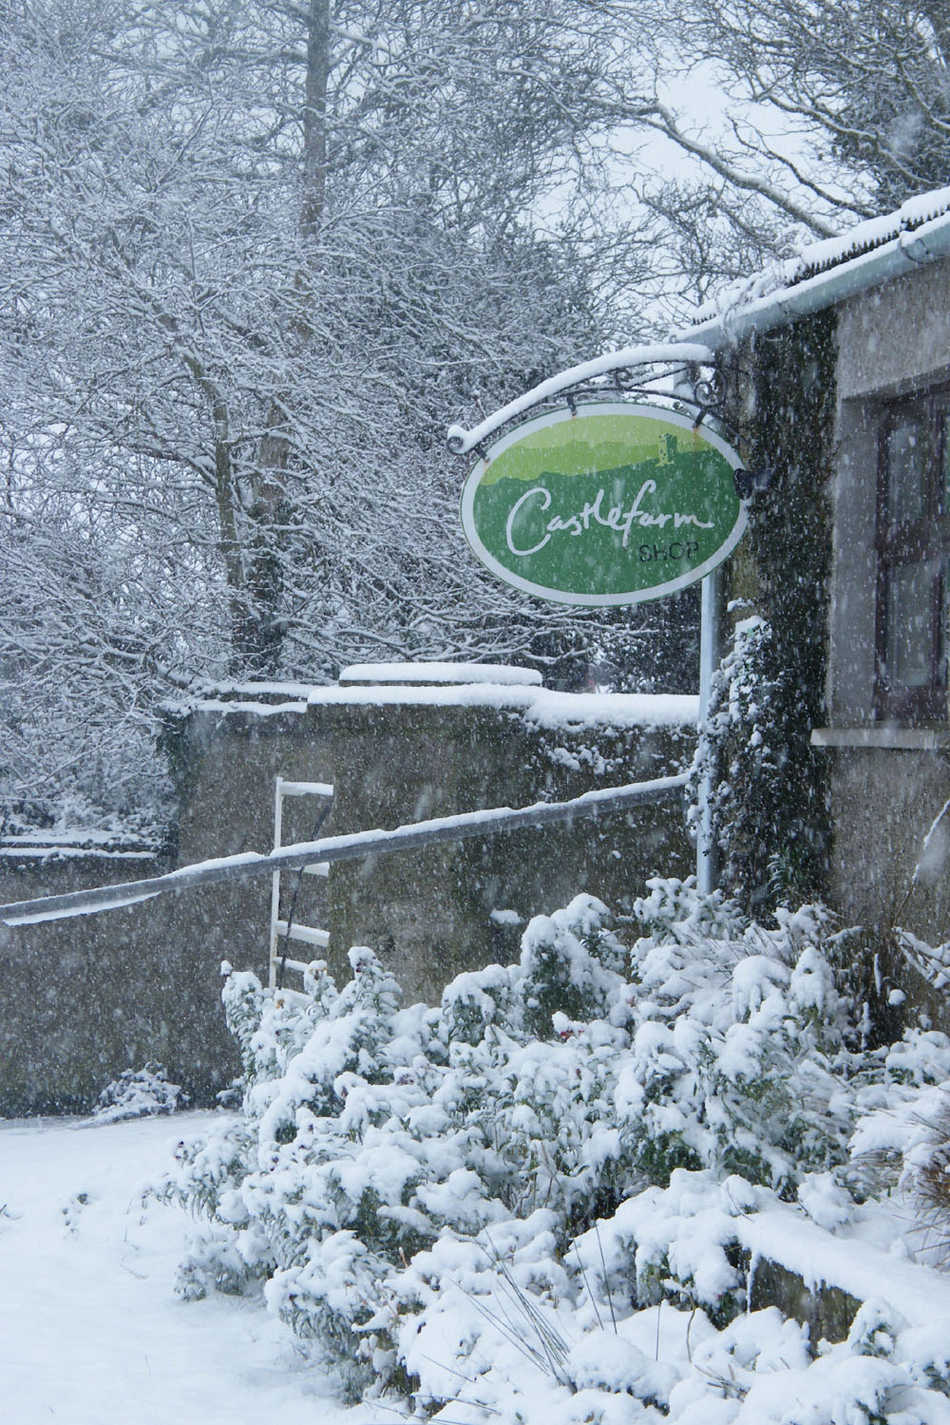 Castlefarm Shop in Snow